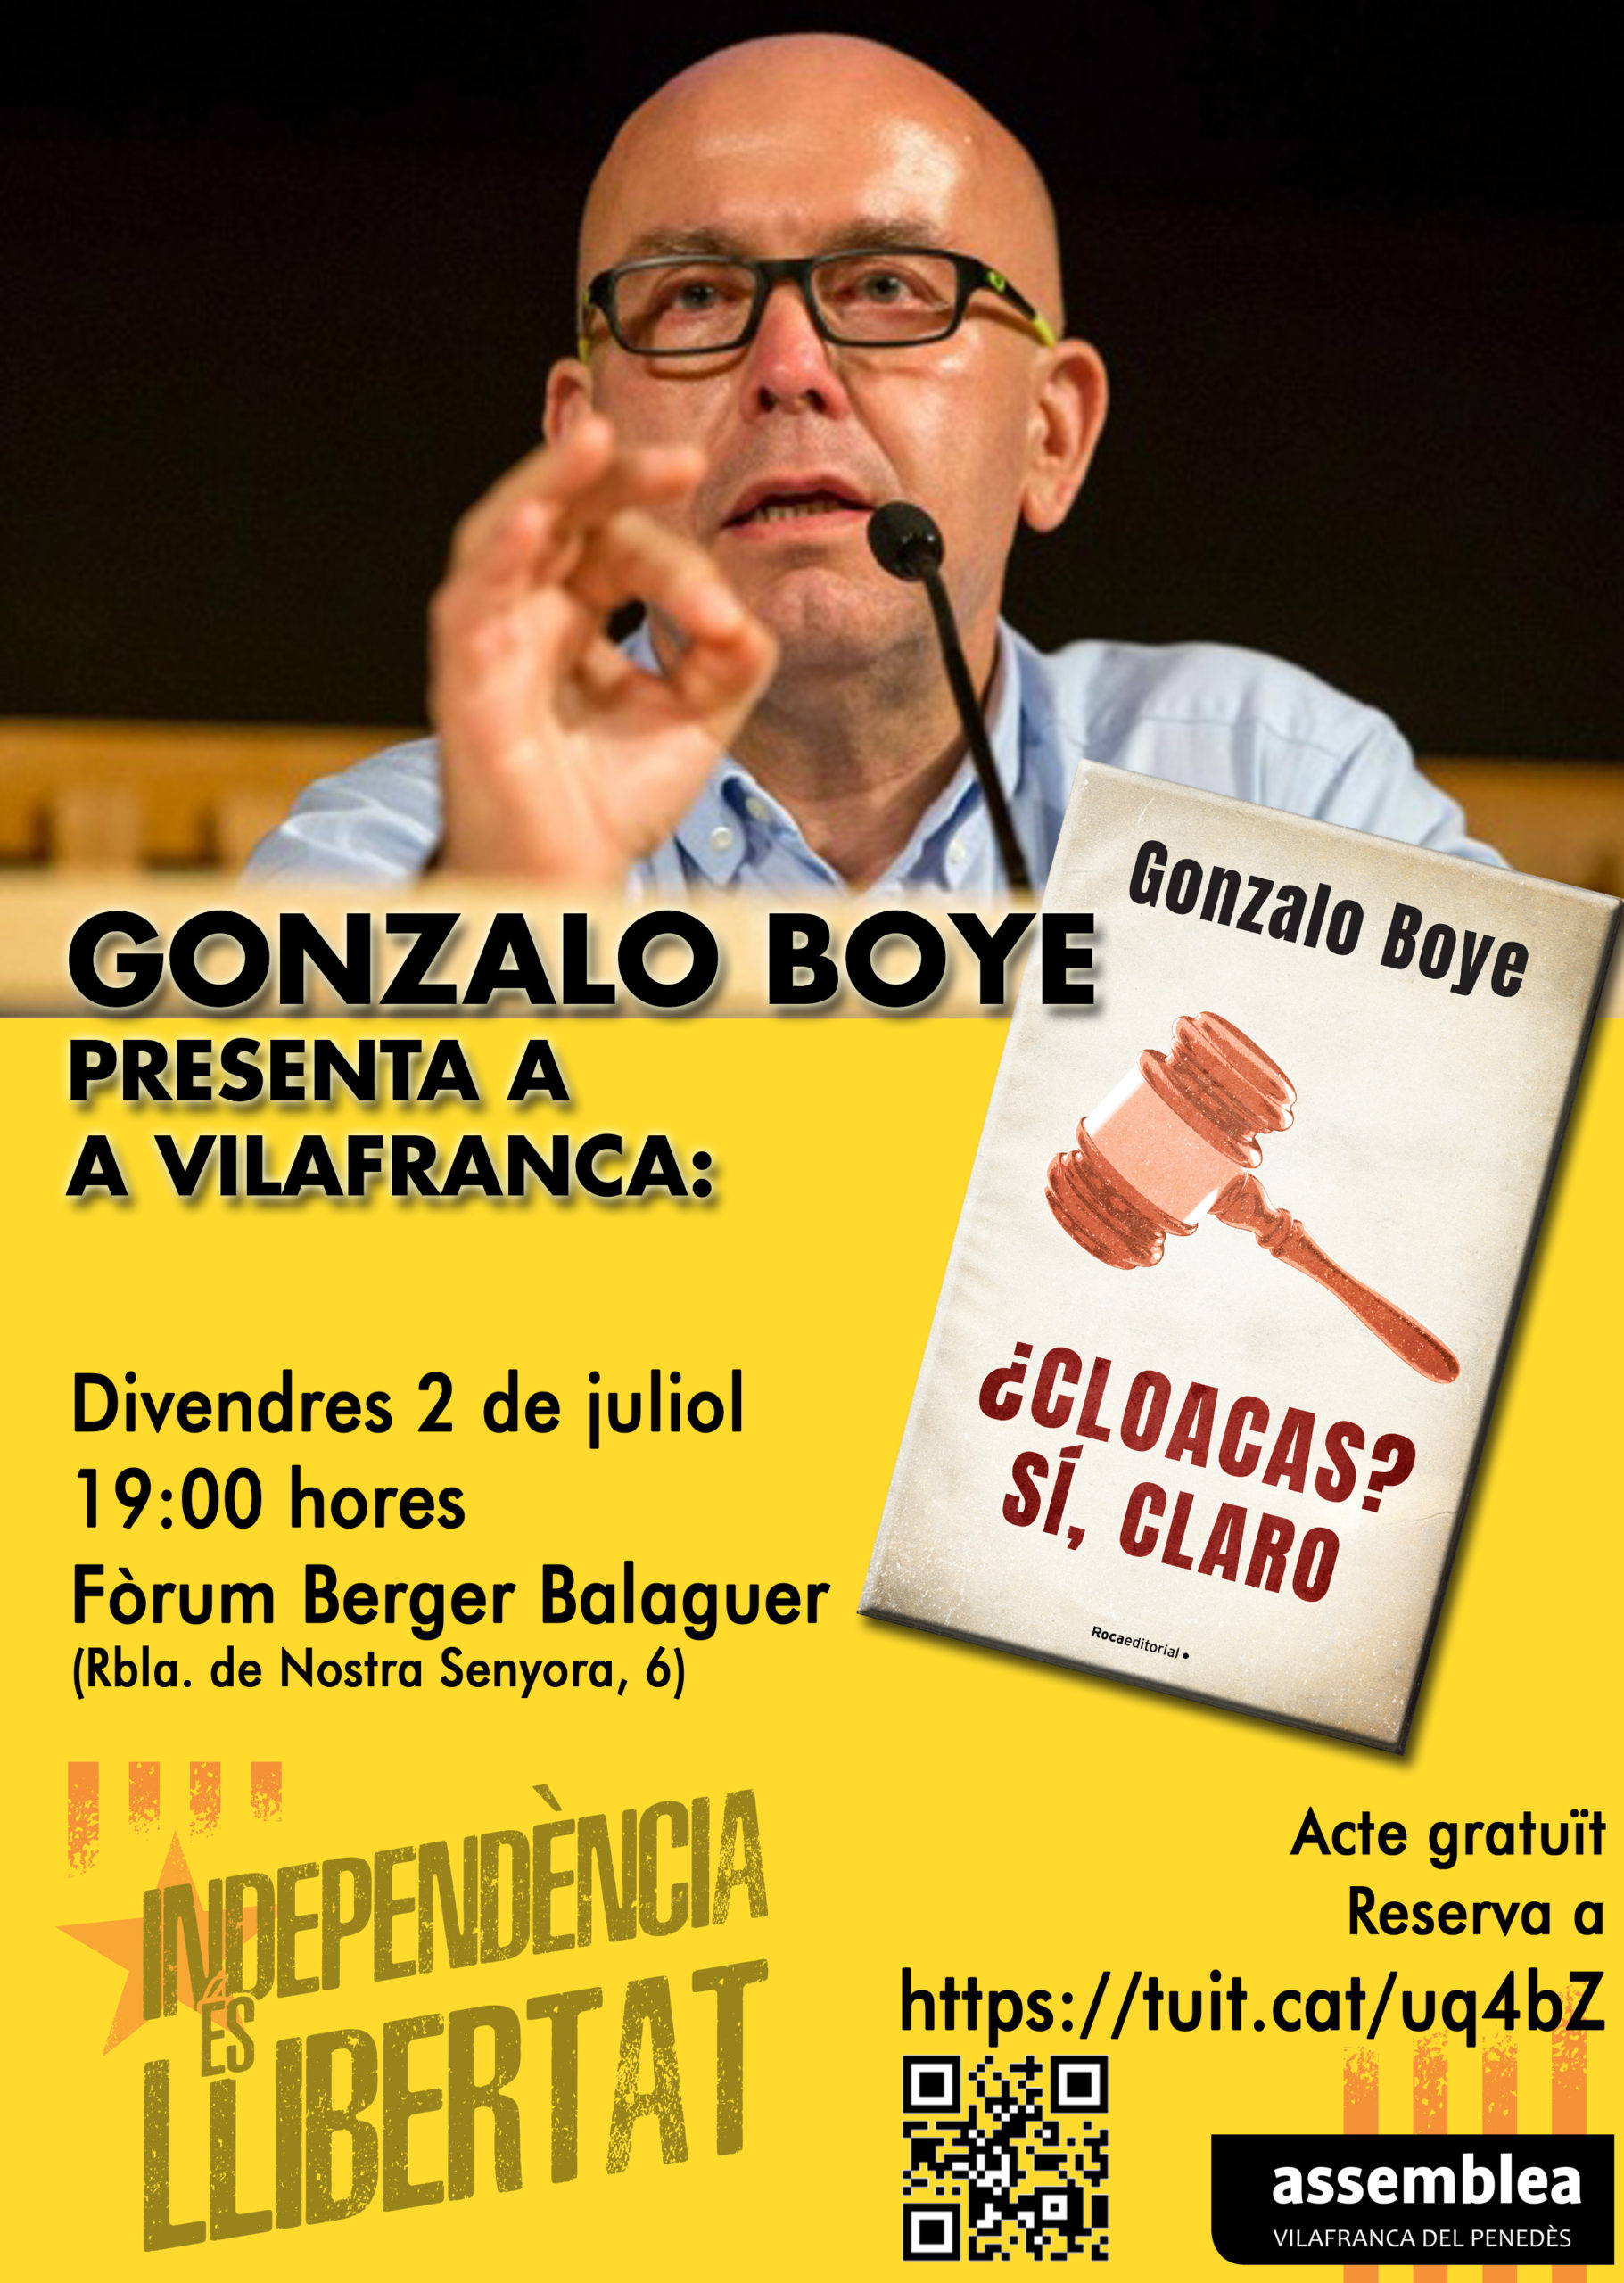 Gonzalo Boye a Vilafranca: ¿Cloacas? Sí, claro